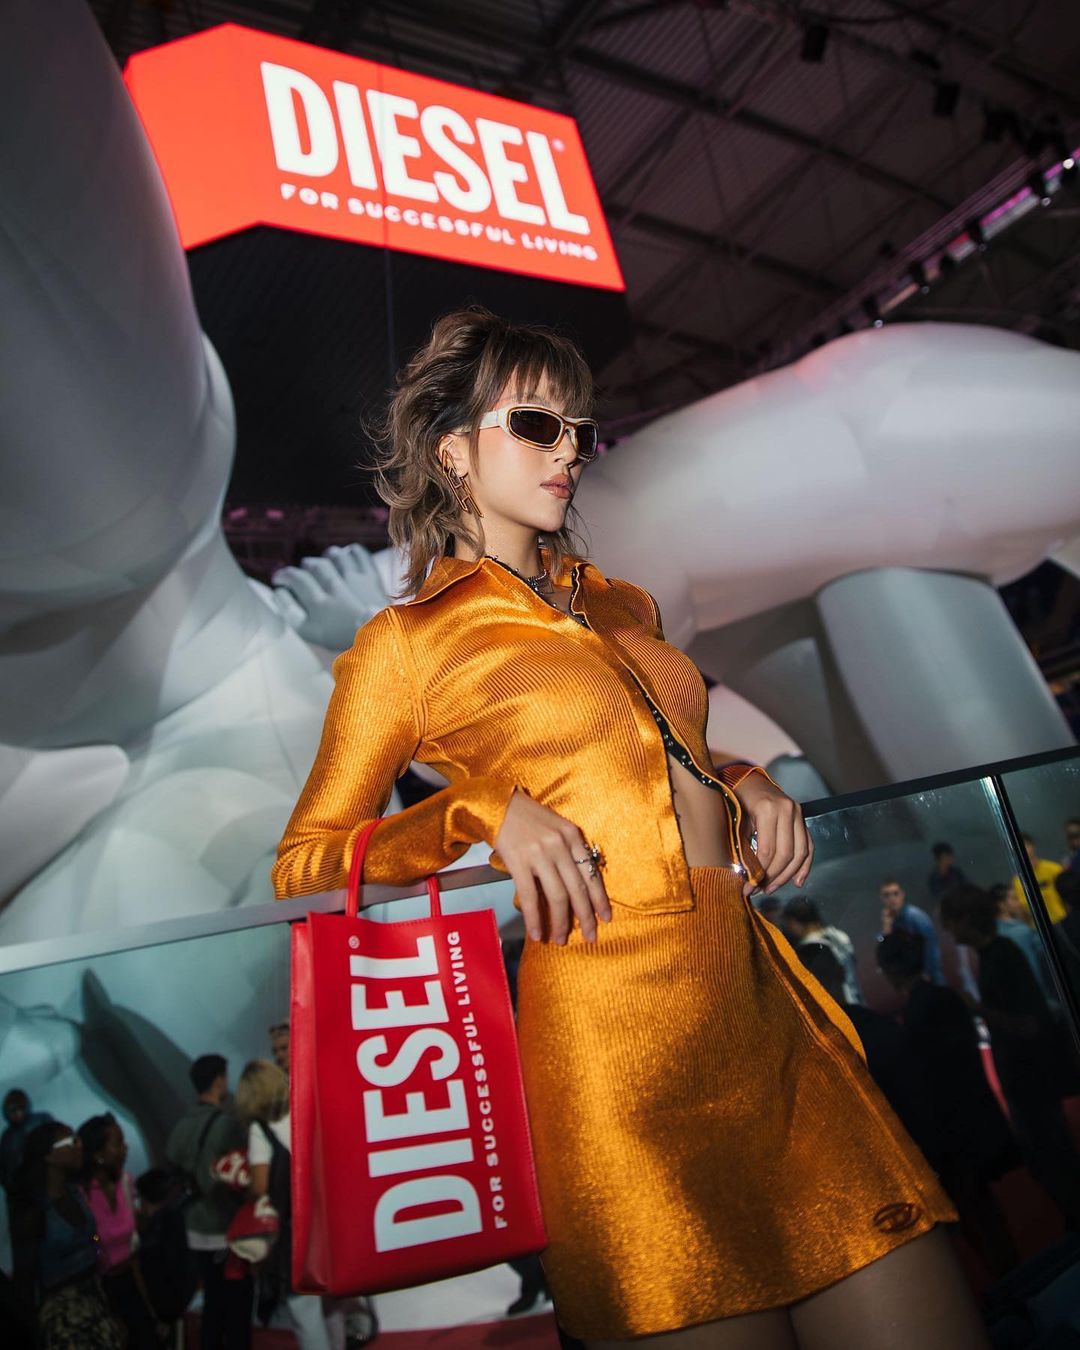 fashionista quỳnh anh shyn tại show diễn diesel